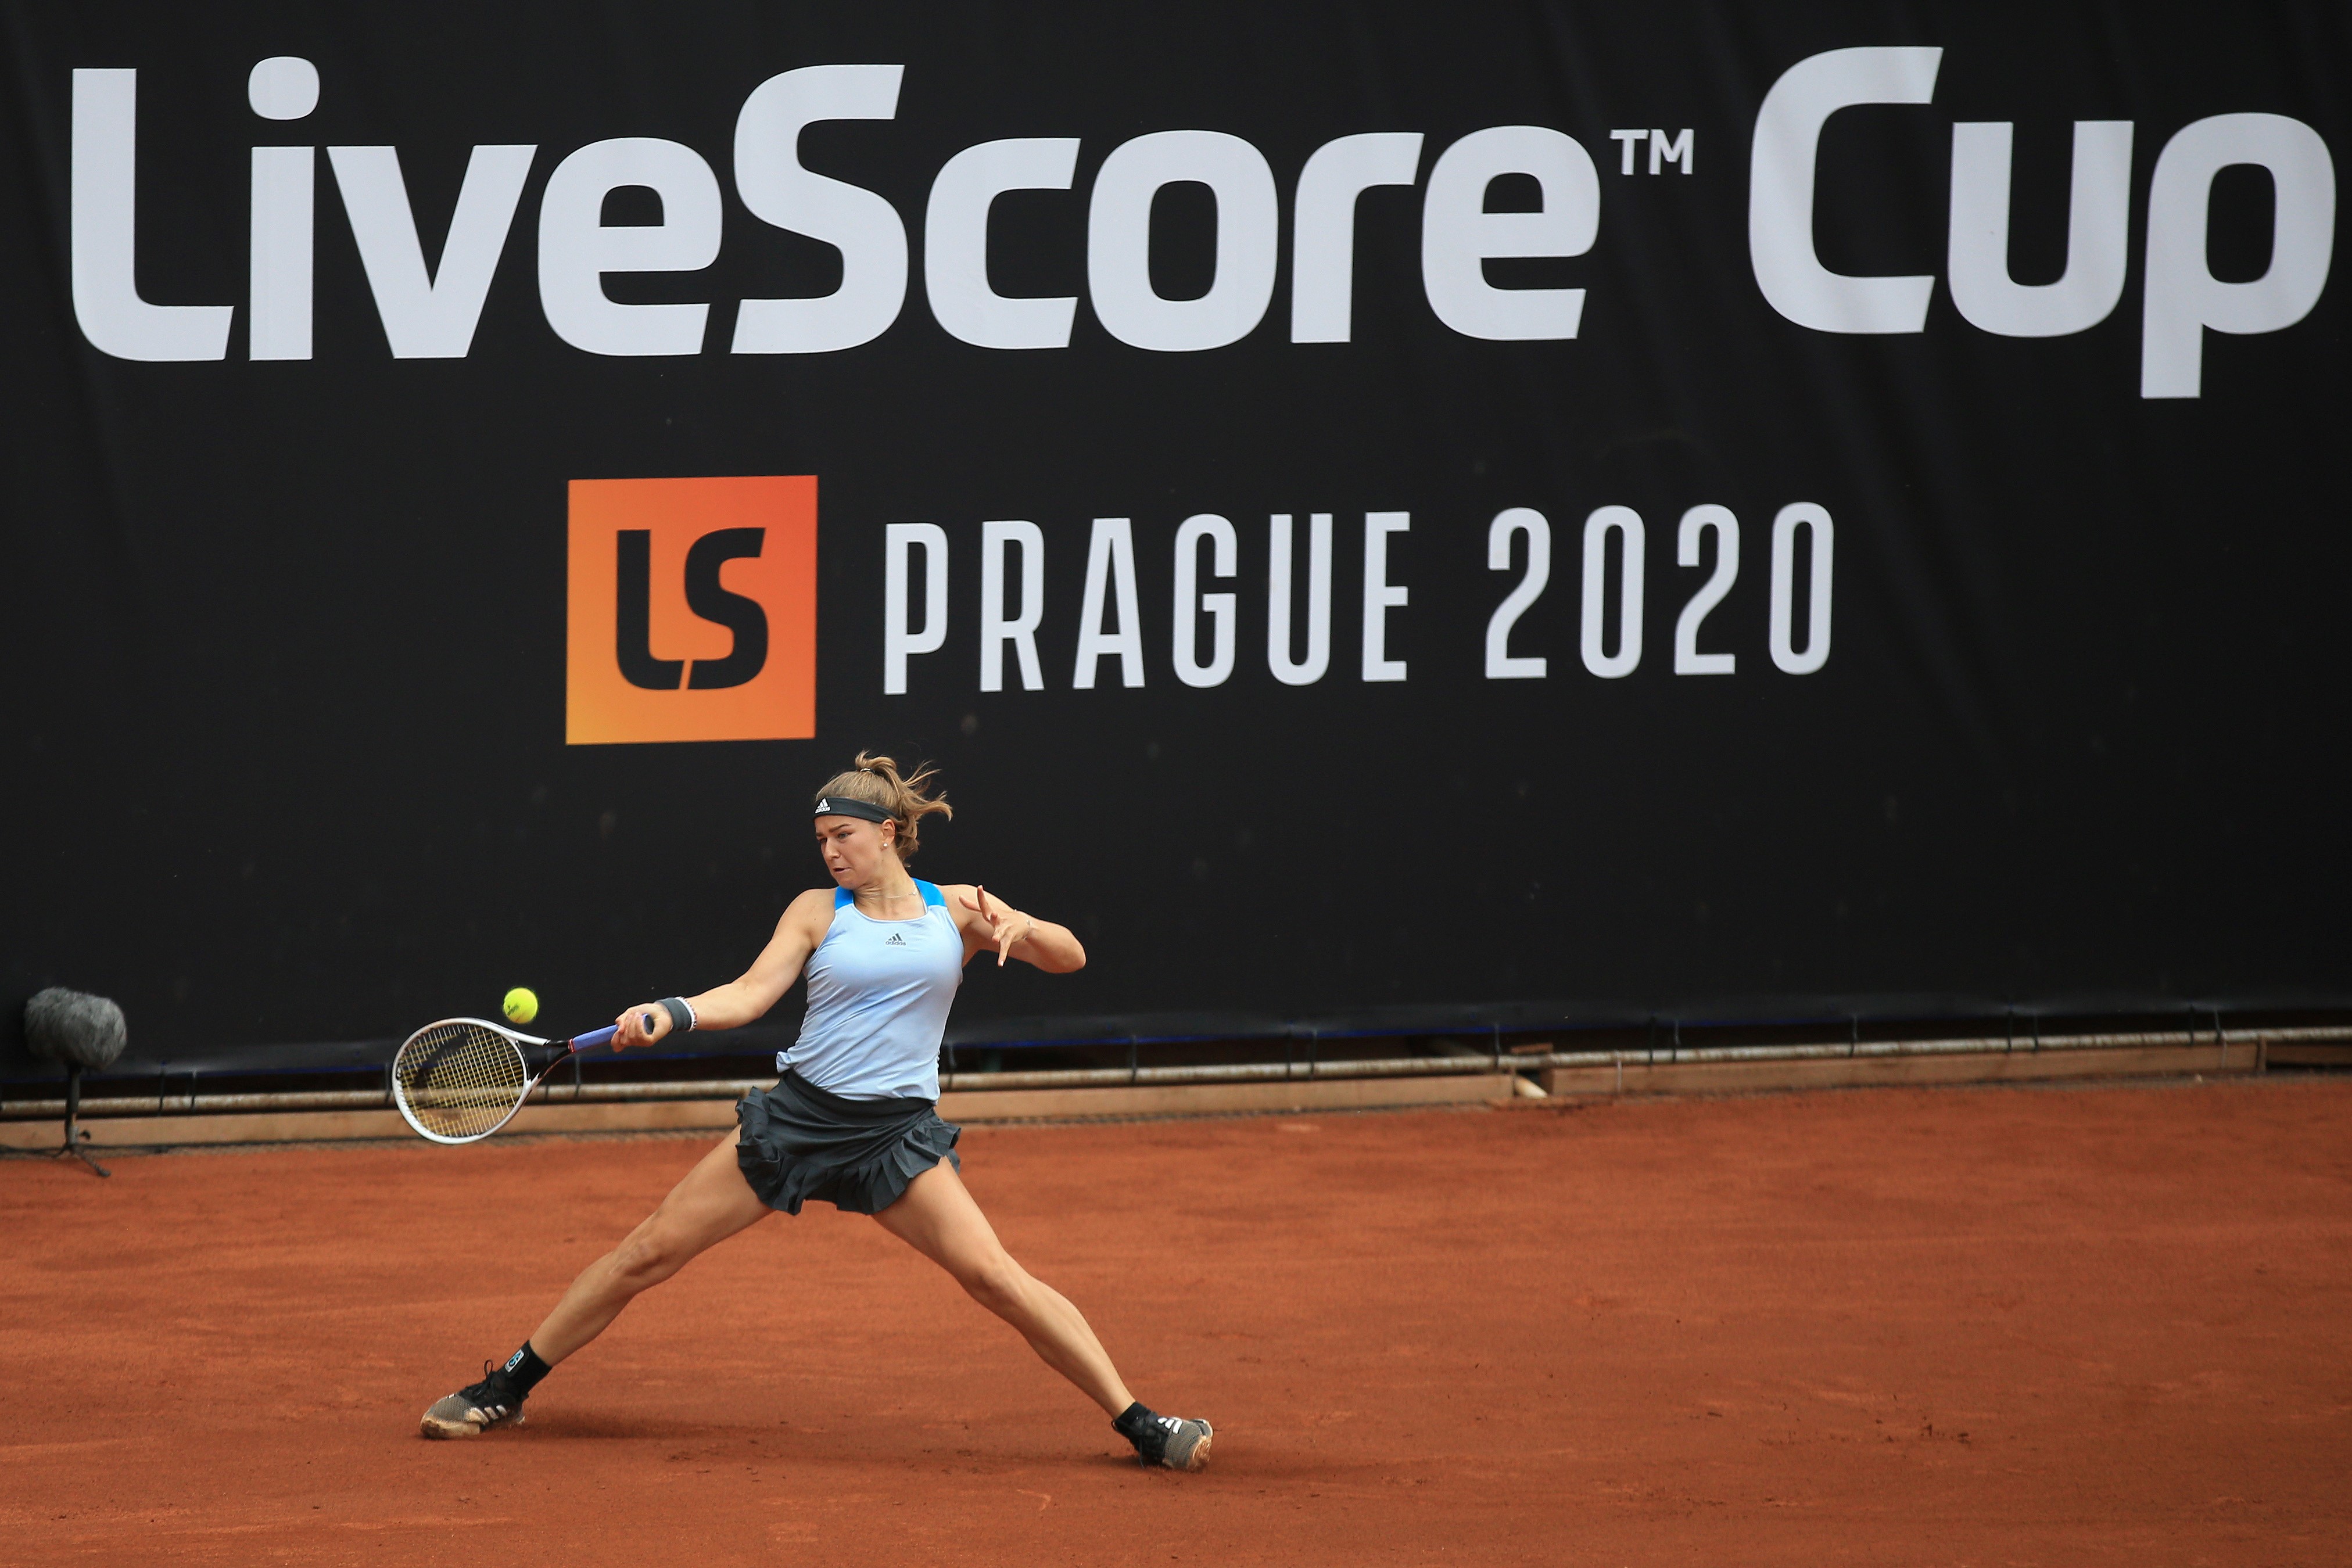 Tereza Martincova advances into final of LiveScore Cup in Prague